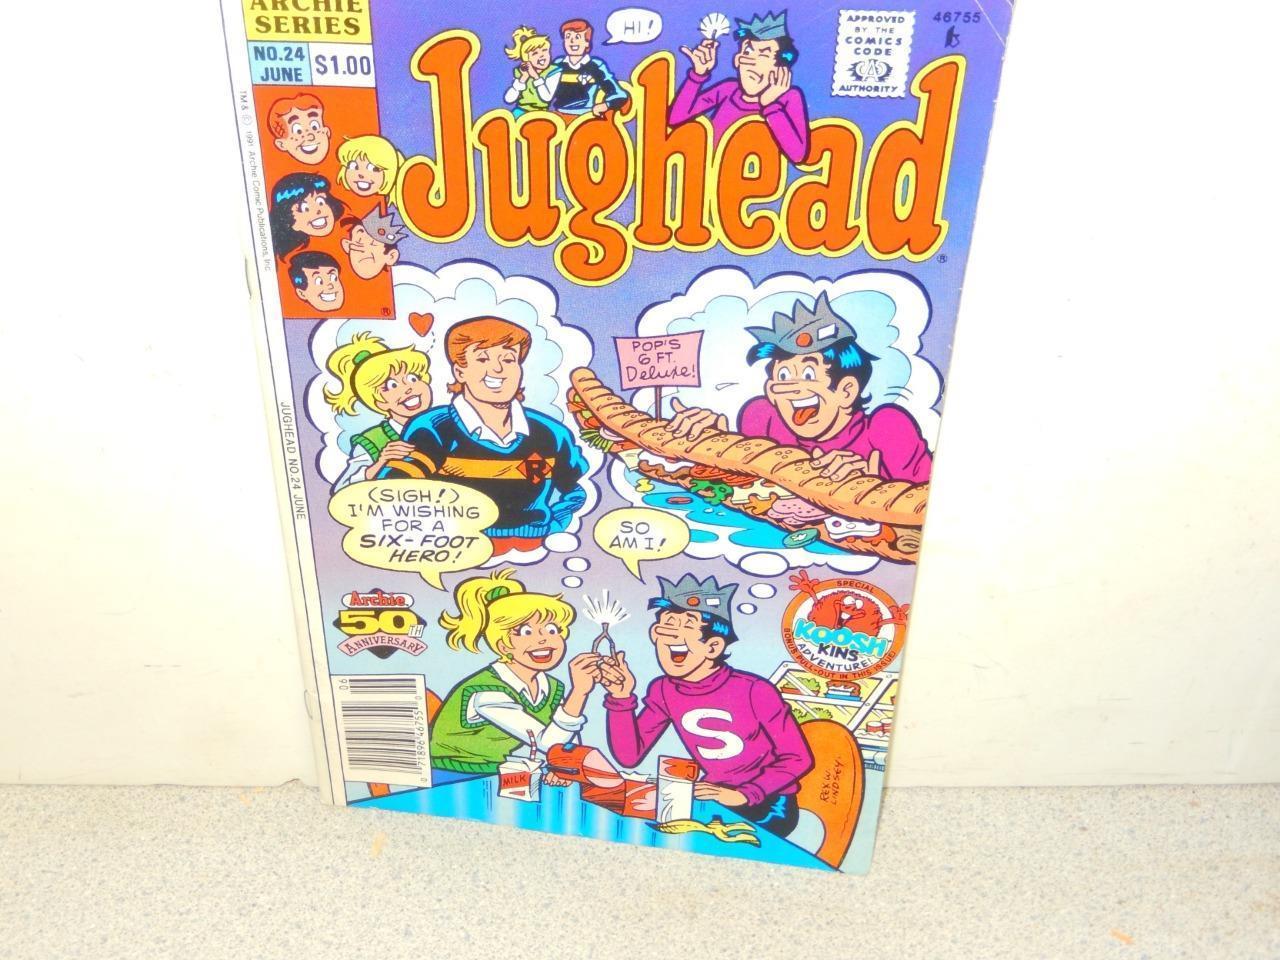 VINTAGE COMIC-ARCHIE COMICS-HI JUGHEAD - # 24 JUNE 1991 - - GOOD-L8 - $2.59